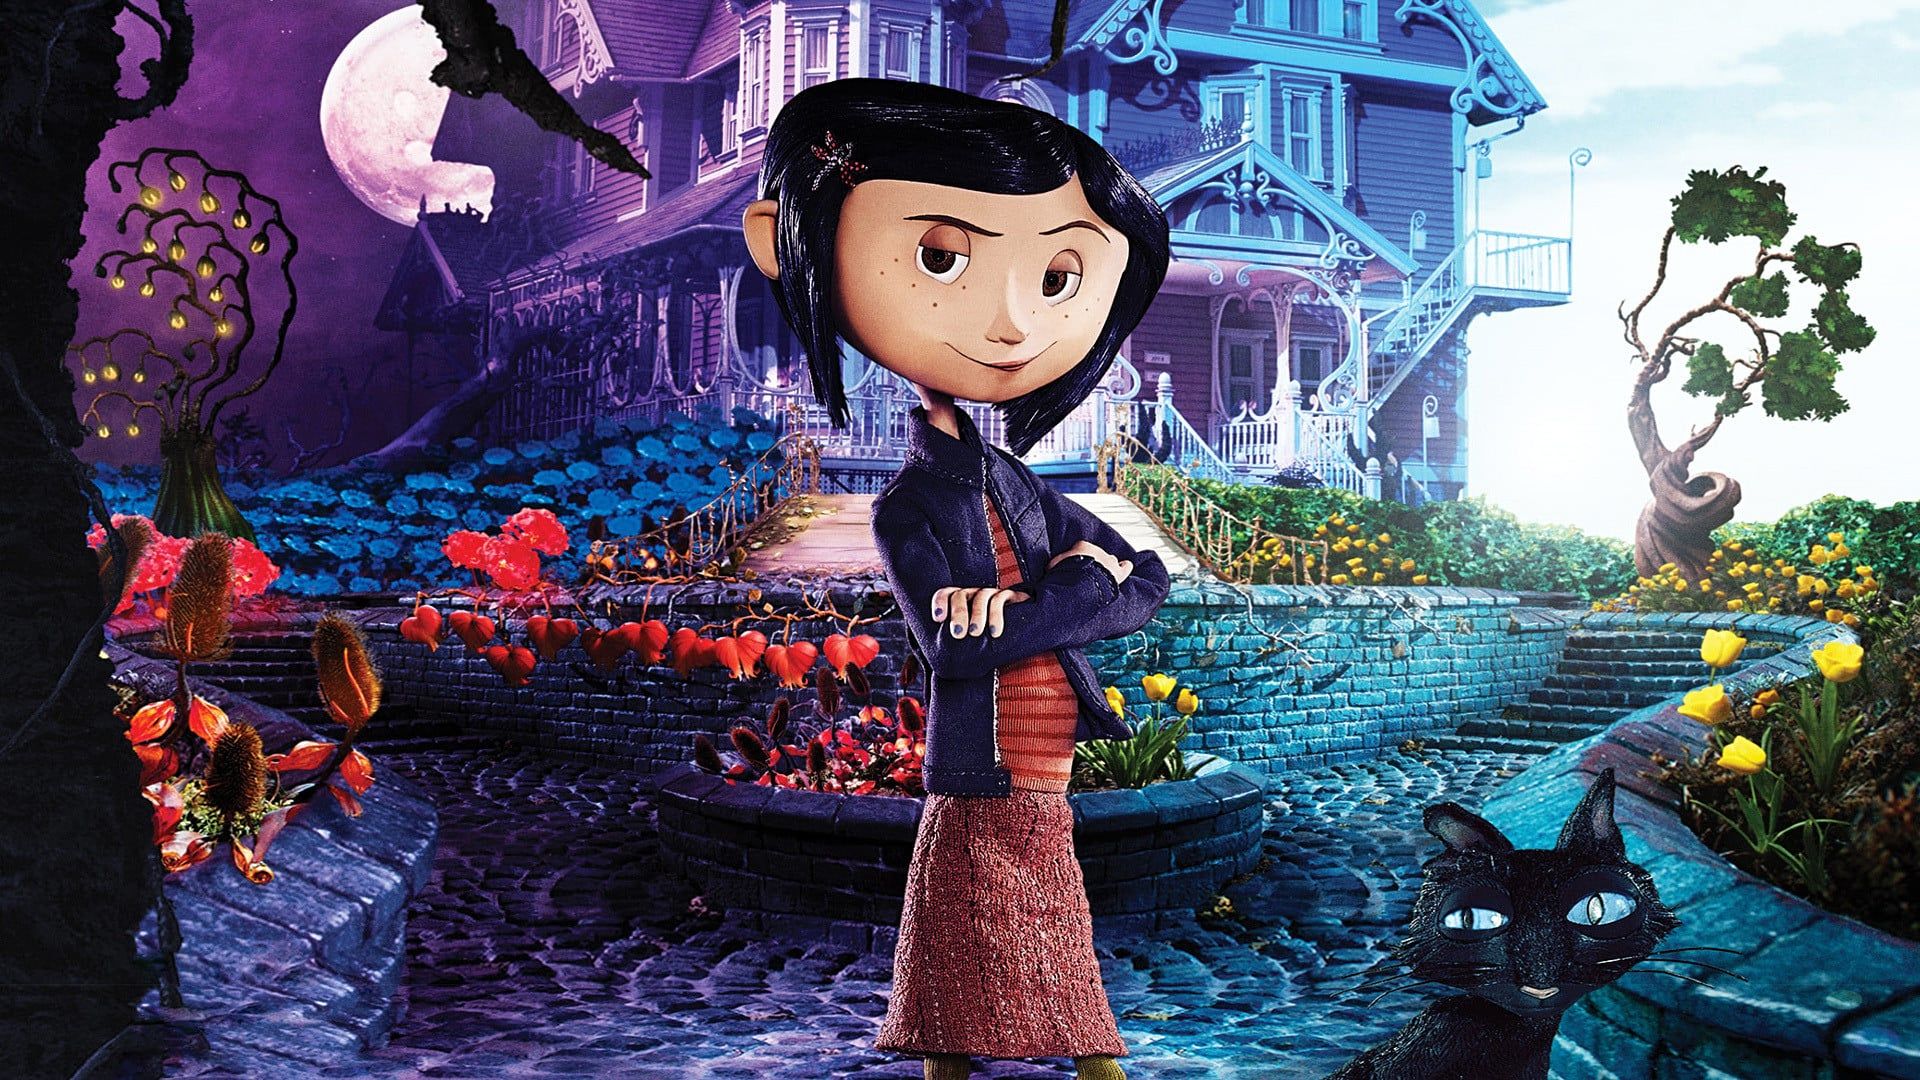 دانلود انیمیشن Coraline 2009